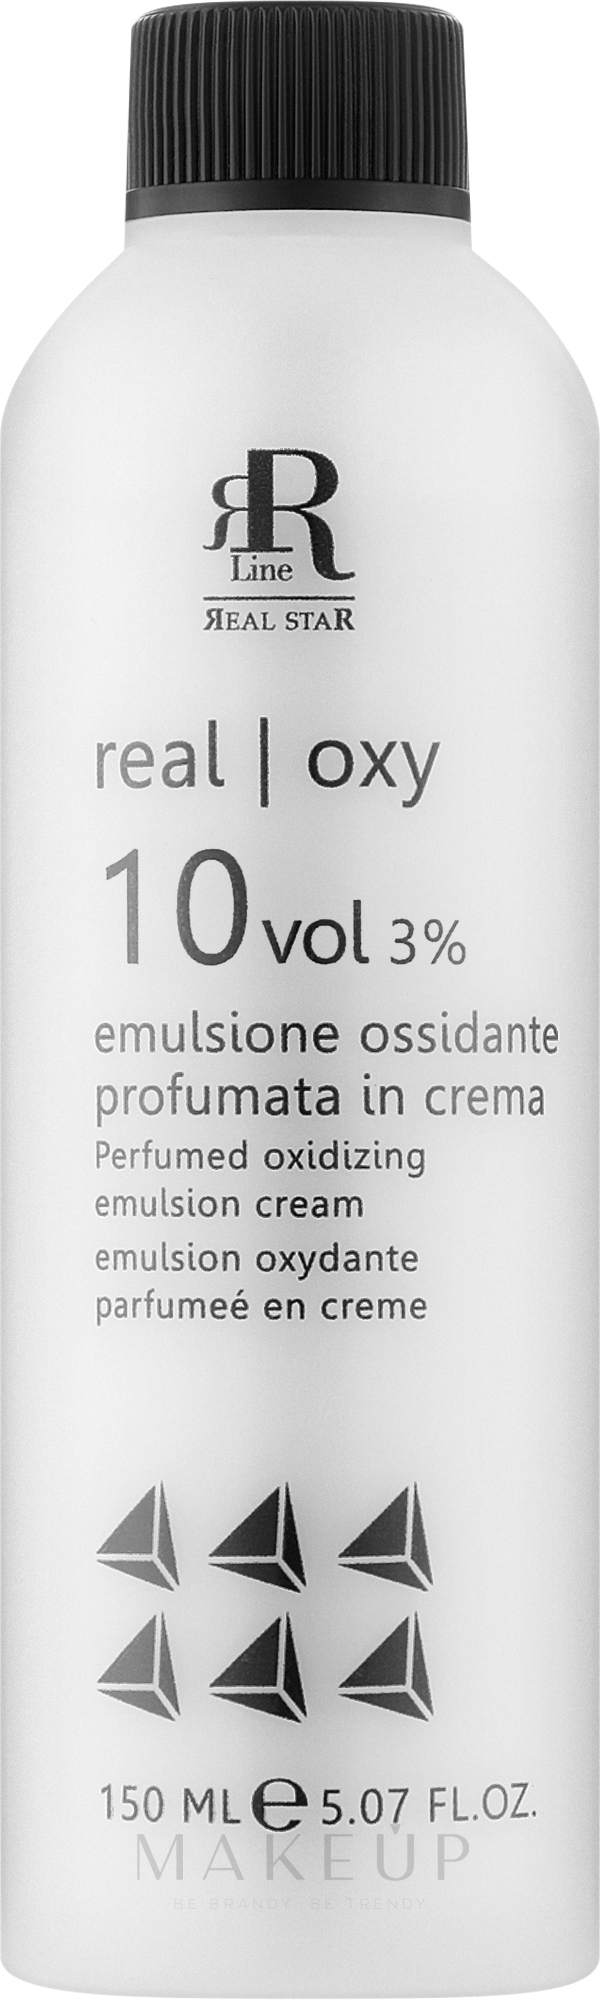 Parfümierte oxidierende Emulsion 3% - RR Line Parfymed Oxidizing Emulsion Cream — Bild 150 ml